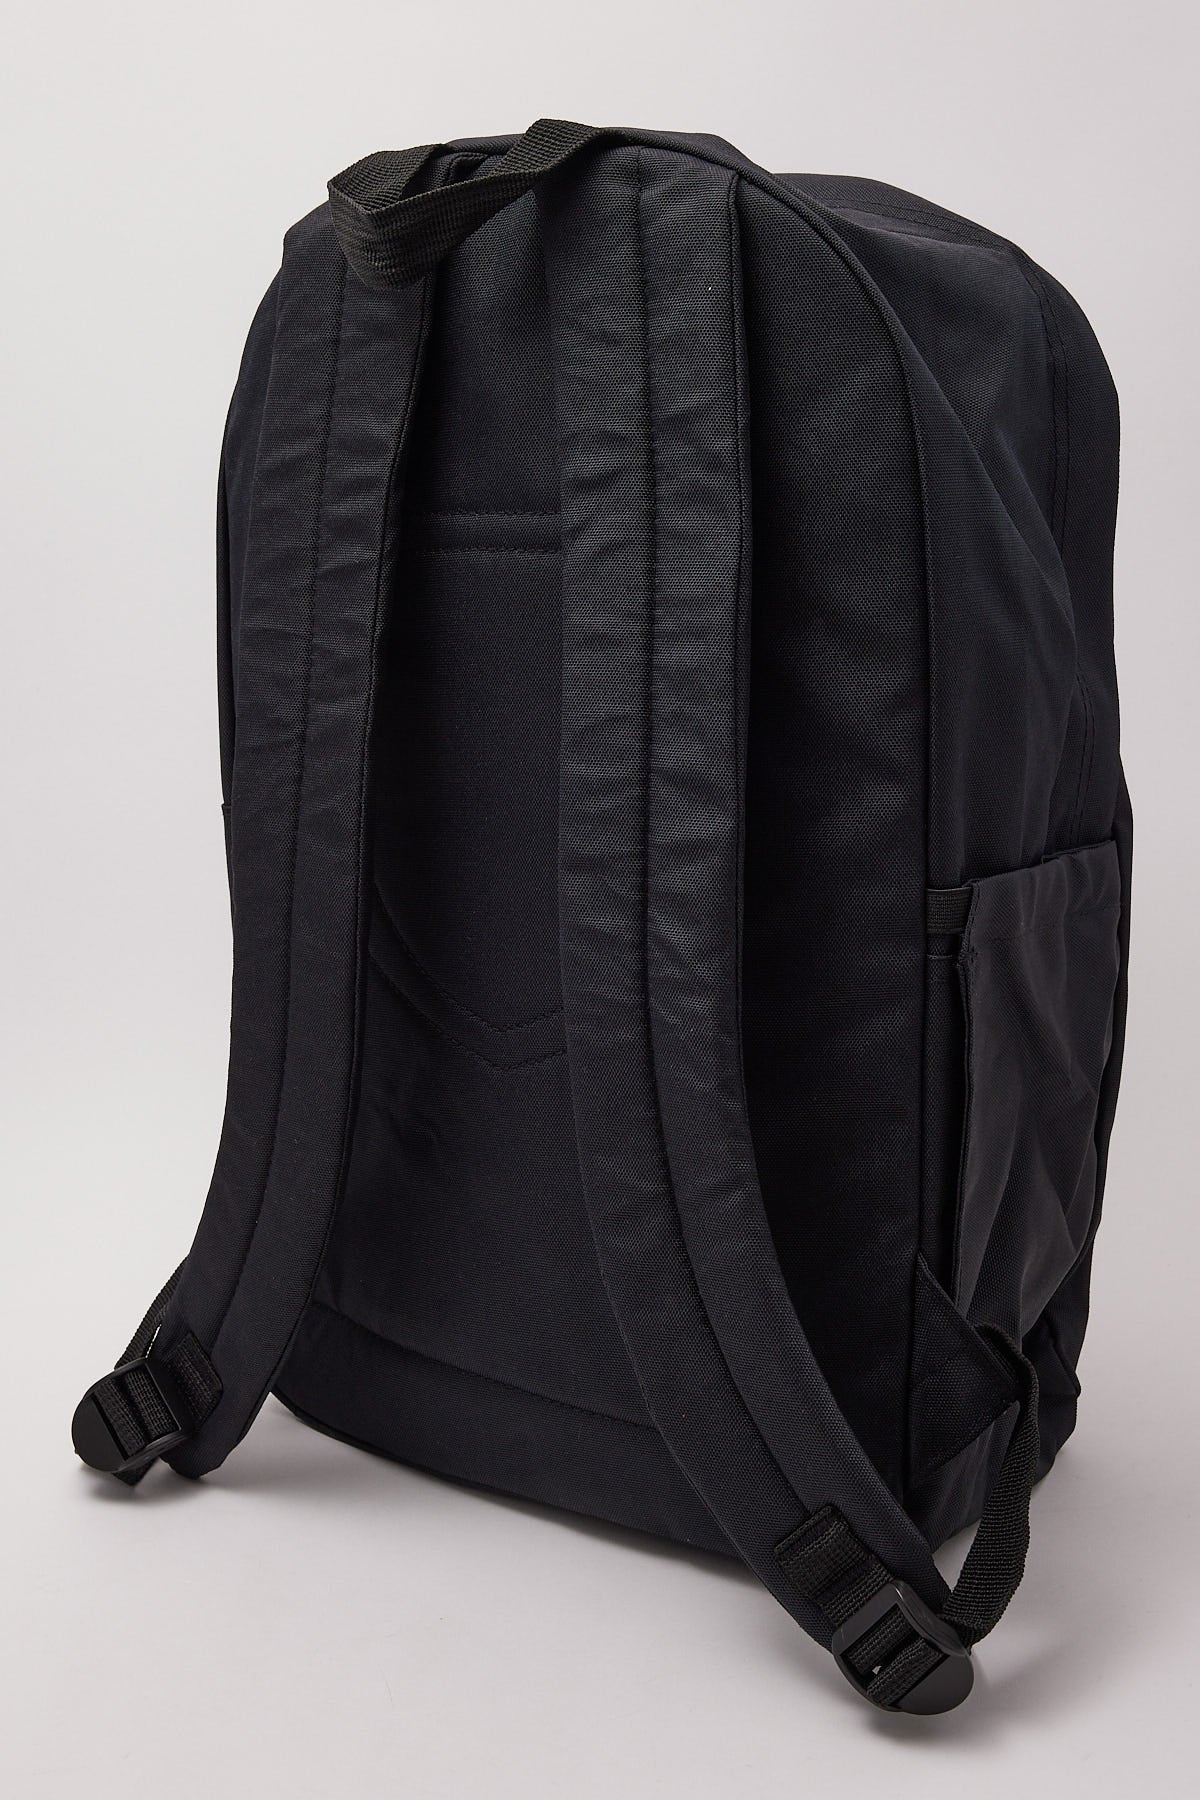 Brixton University Backpack Black